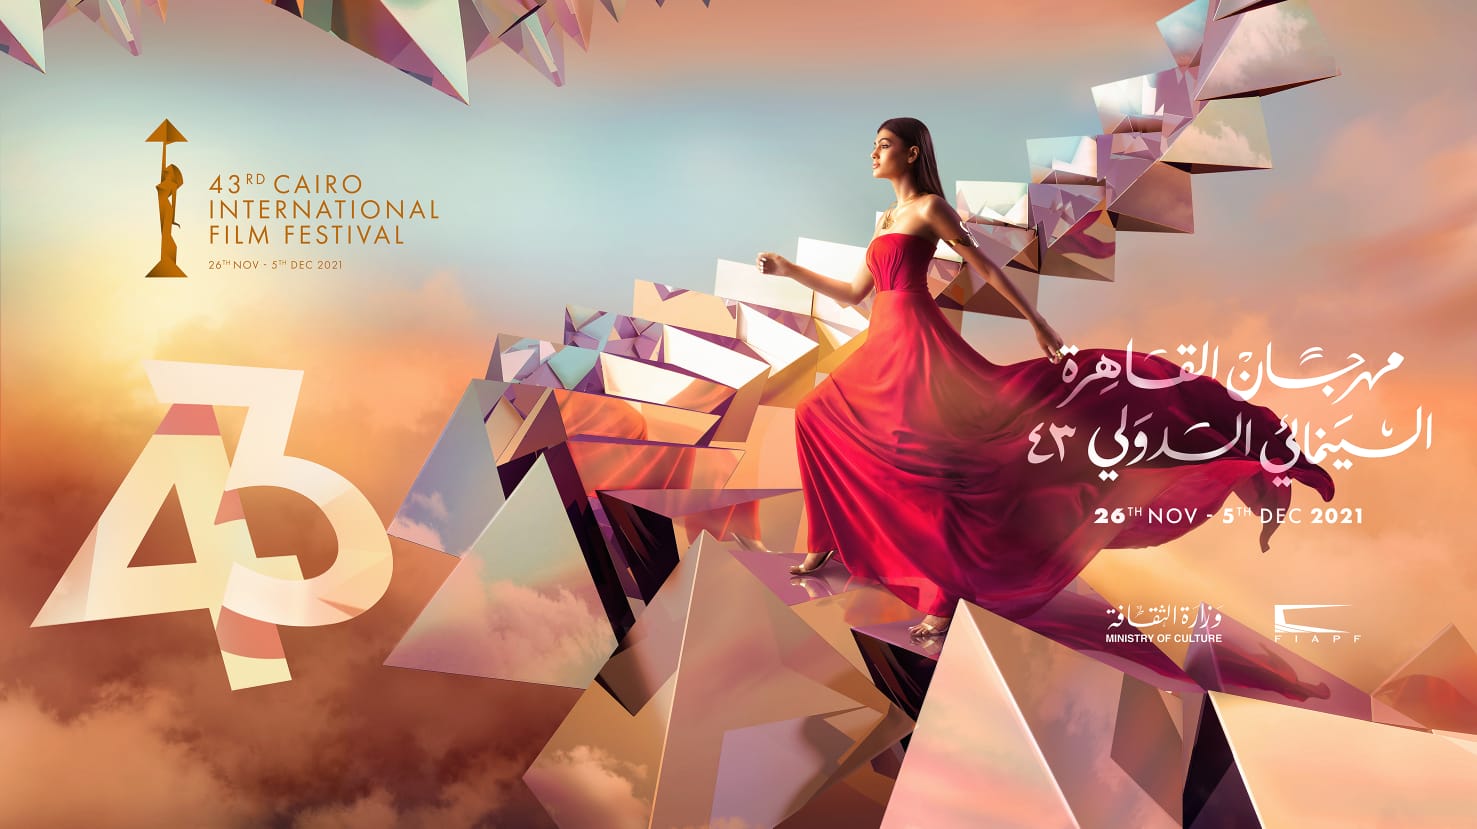 أويما 20 - Uima20 | مهرجان القاهرة السينمائي يعلن قائمة الأفلام المتنافسة ضمن مسابقته الدولية بالدورة الـ 43